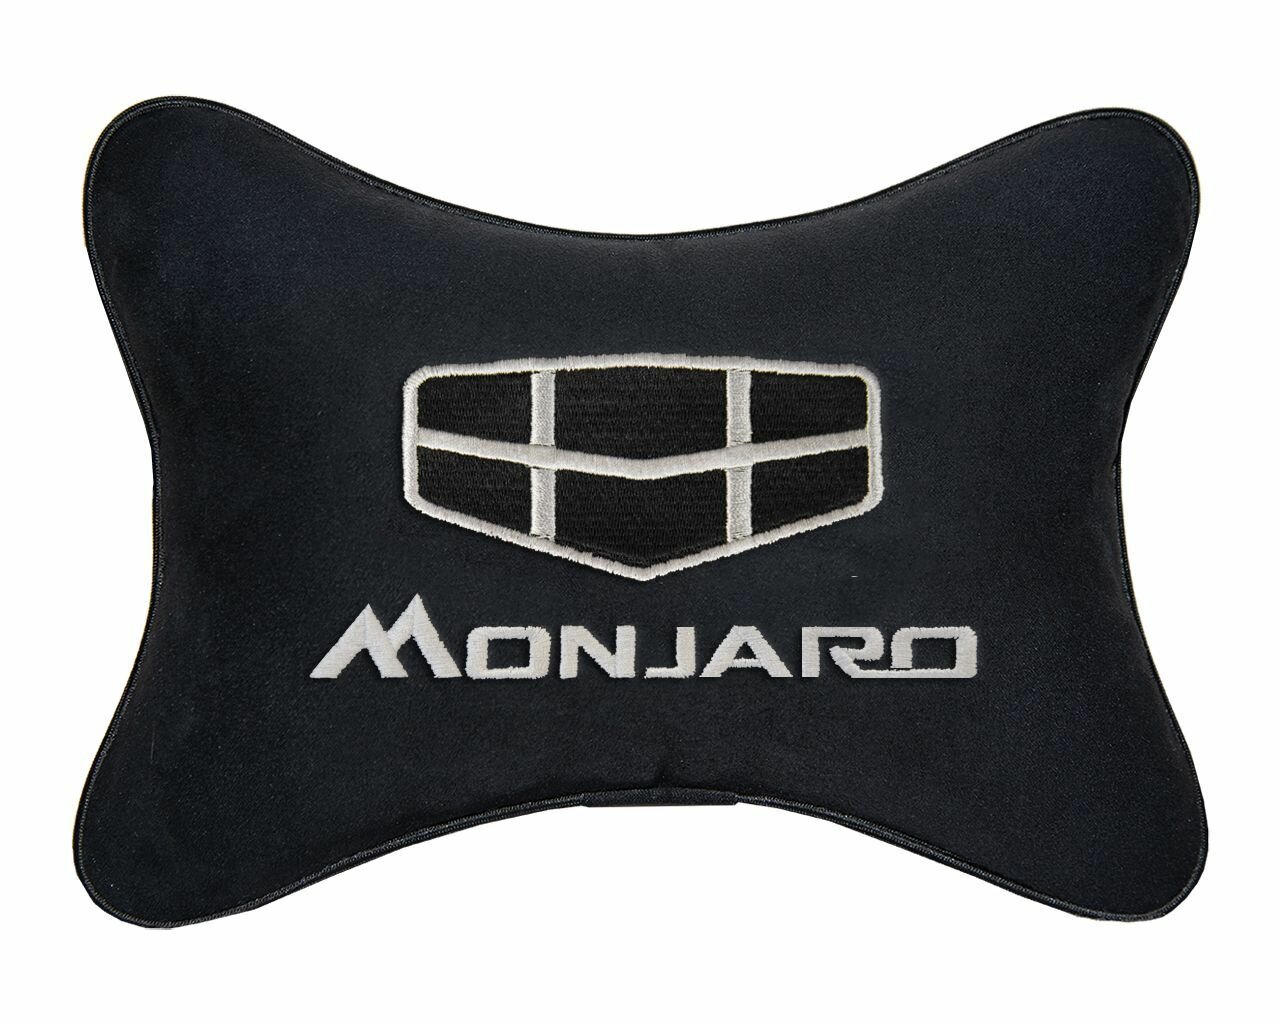 Автомобильная подушка на подголовник алькантара Black с логотипом автомобиля GEELY Monjaro